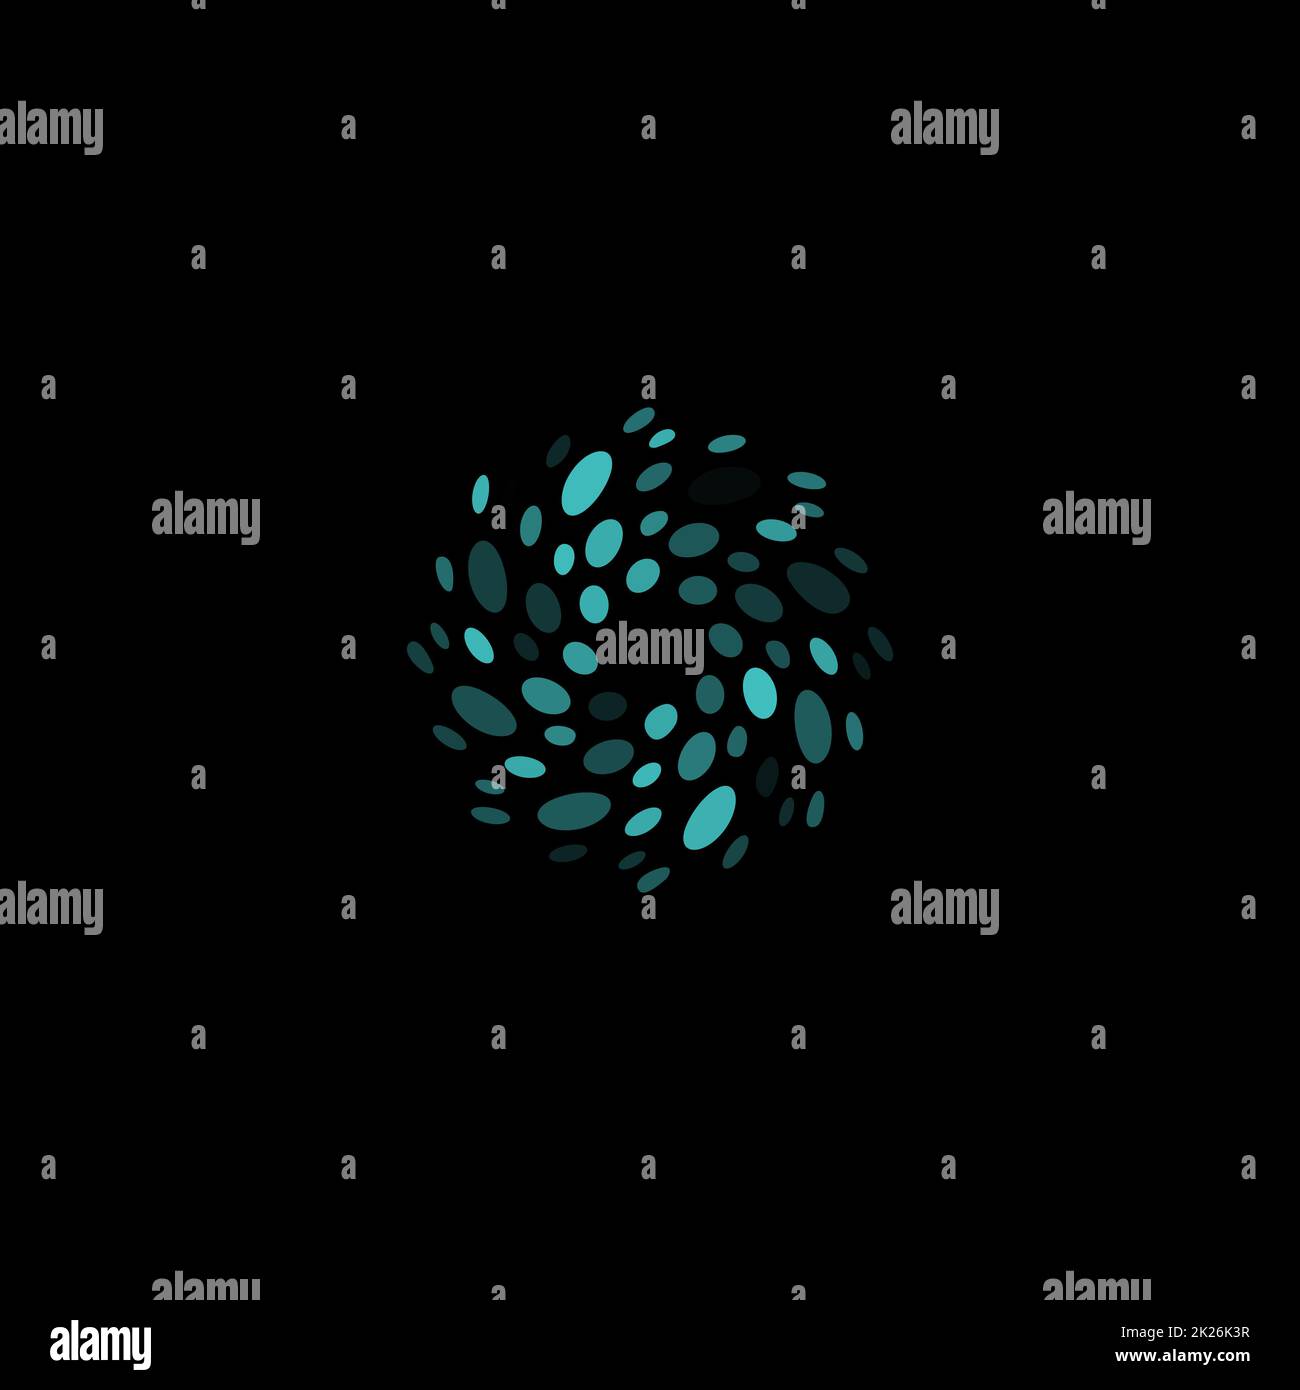 Abstrakt Kreis Logo. Ungewöhnliche gepunktete Runde isolierte Chem Logo. Virus-Symbol. Blaue Wasser-Wirbel. Symbolblume. Spirale Flüssigkeit trinken Zeichen. Vektorgrafik Keime. Stockfoto